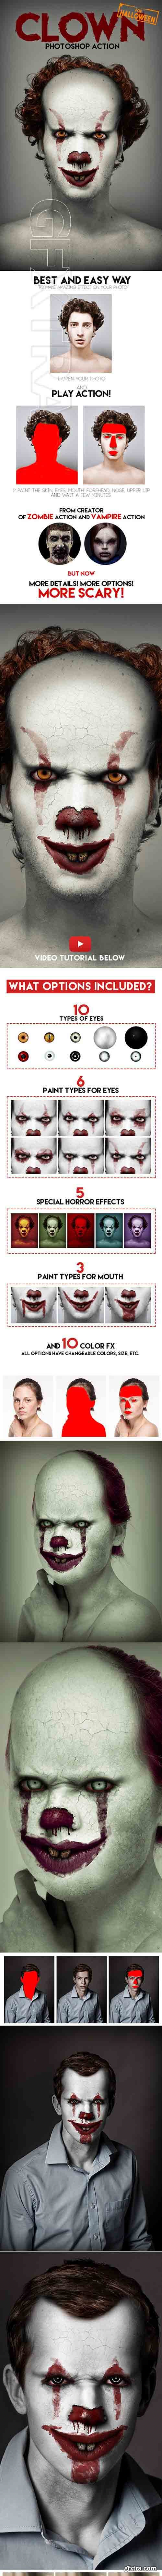 GraphicRiver - Clown Photoshop Action 20736775